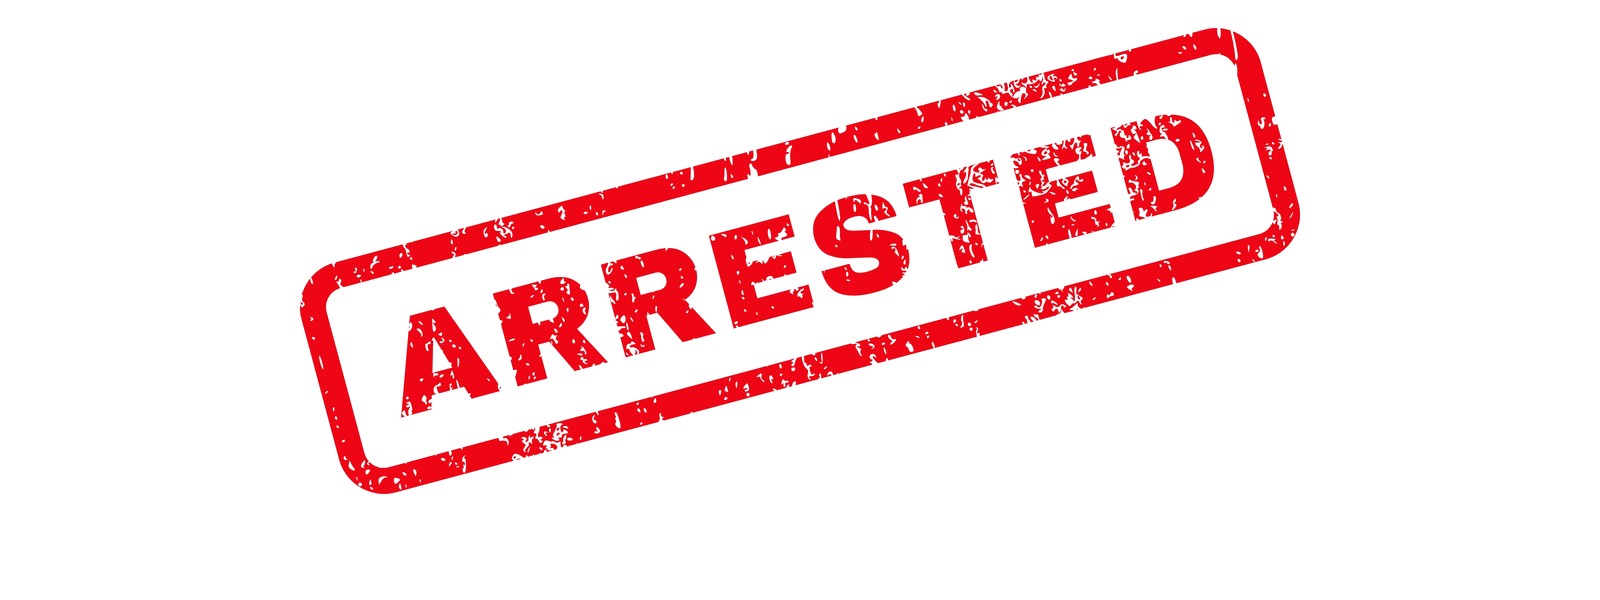 31 arrested for violating inter-provincial travel restriction